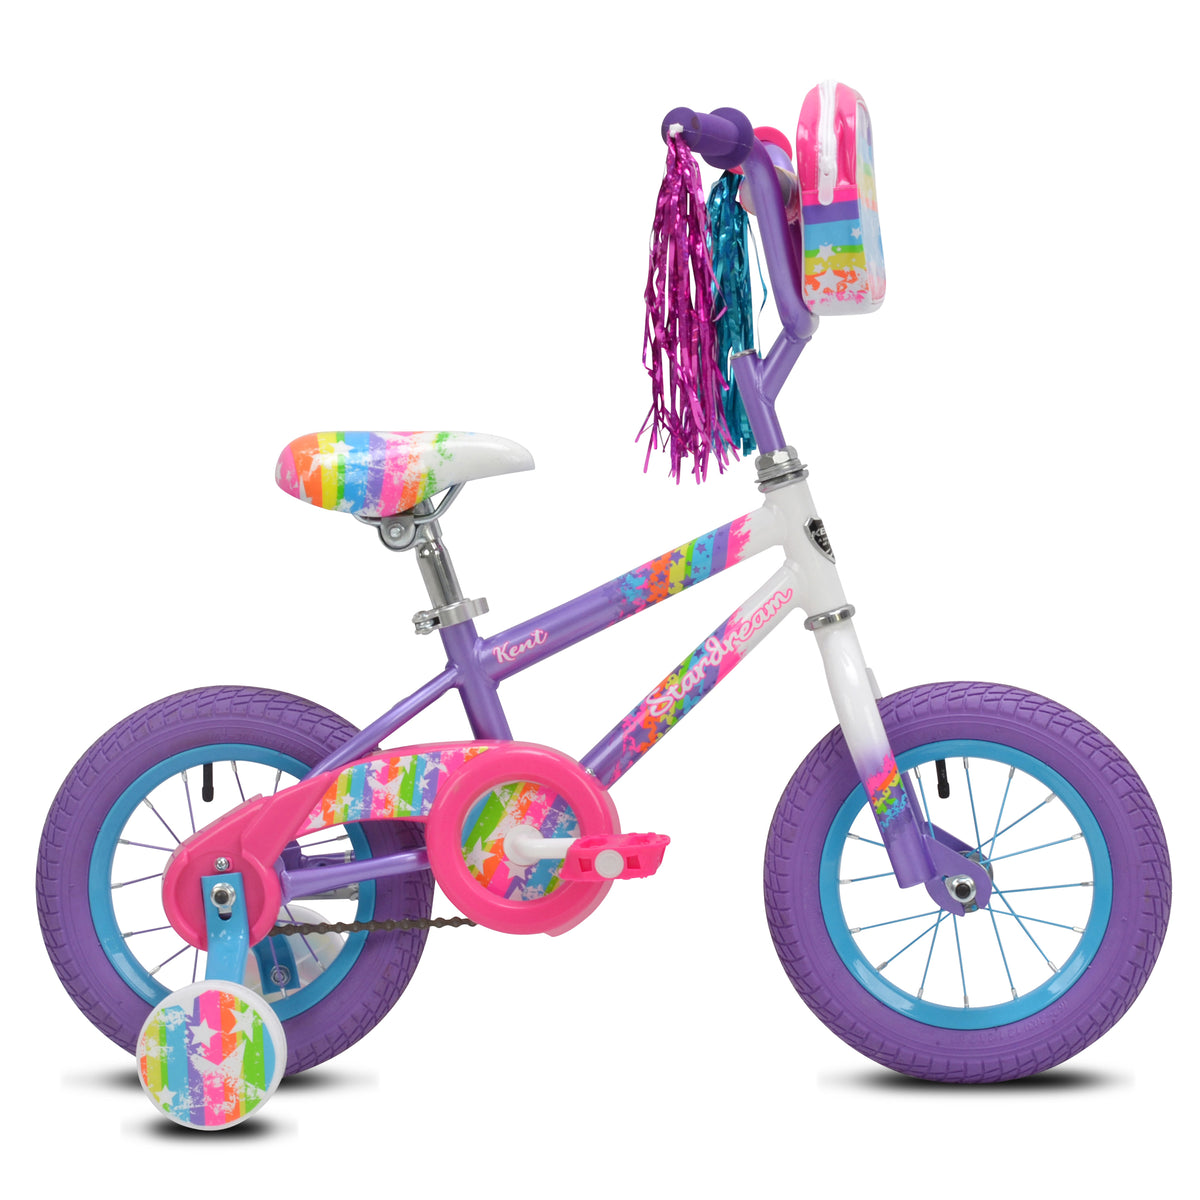 12" Kent Star Dream | Cruiser Bike for Kids Ages 2-4